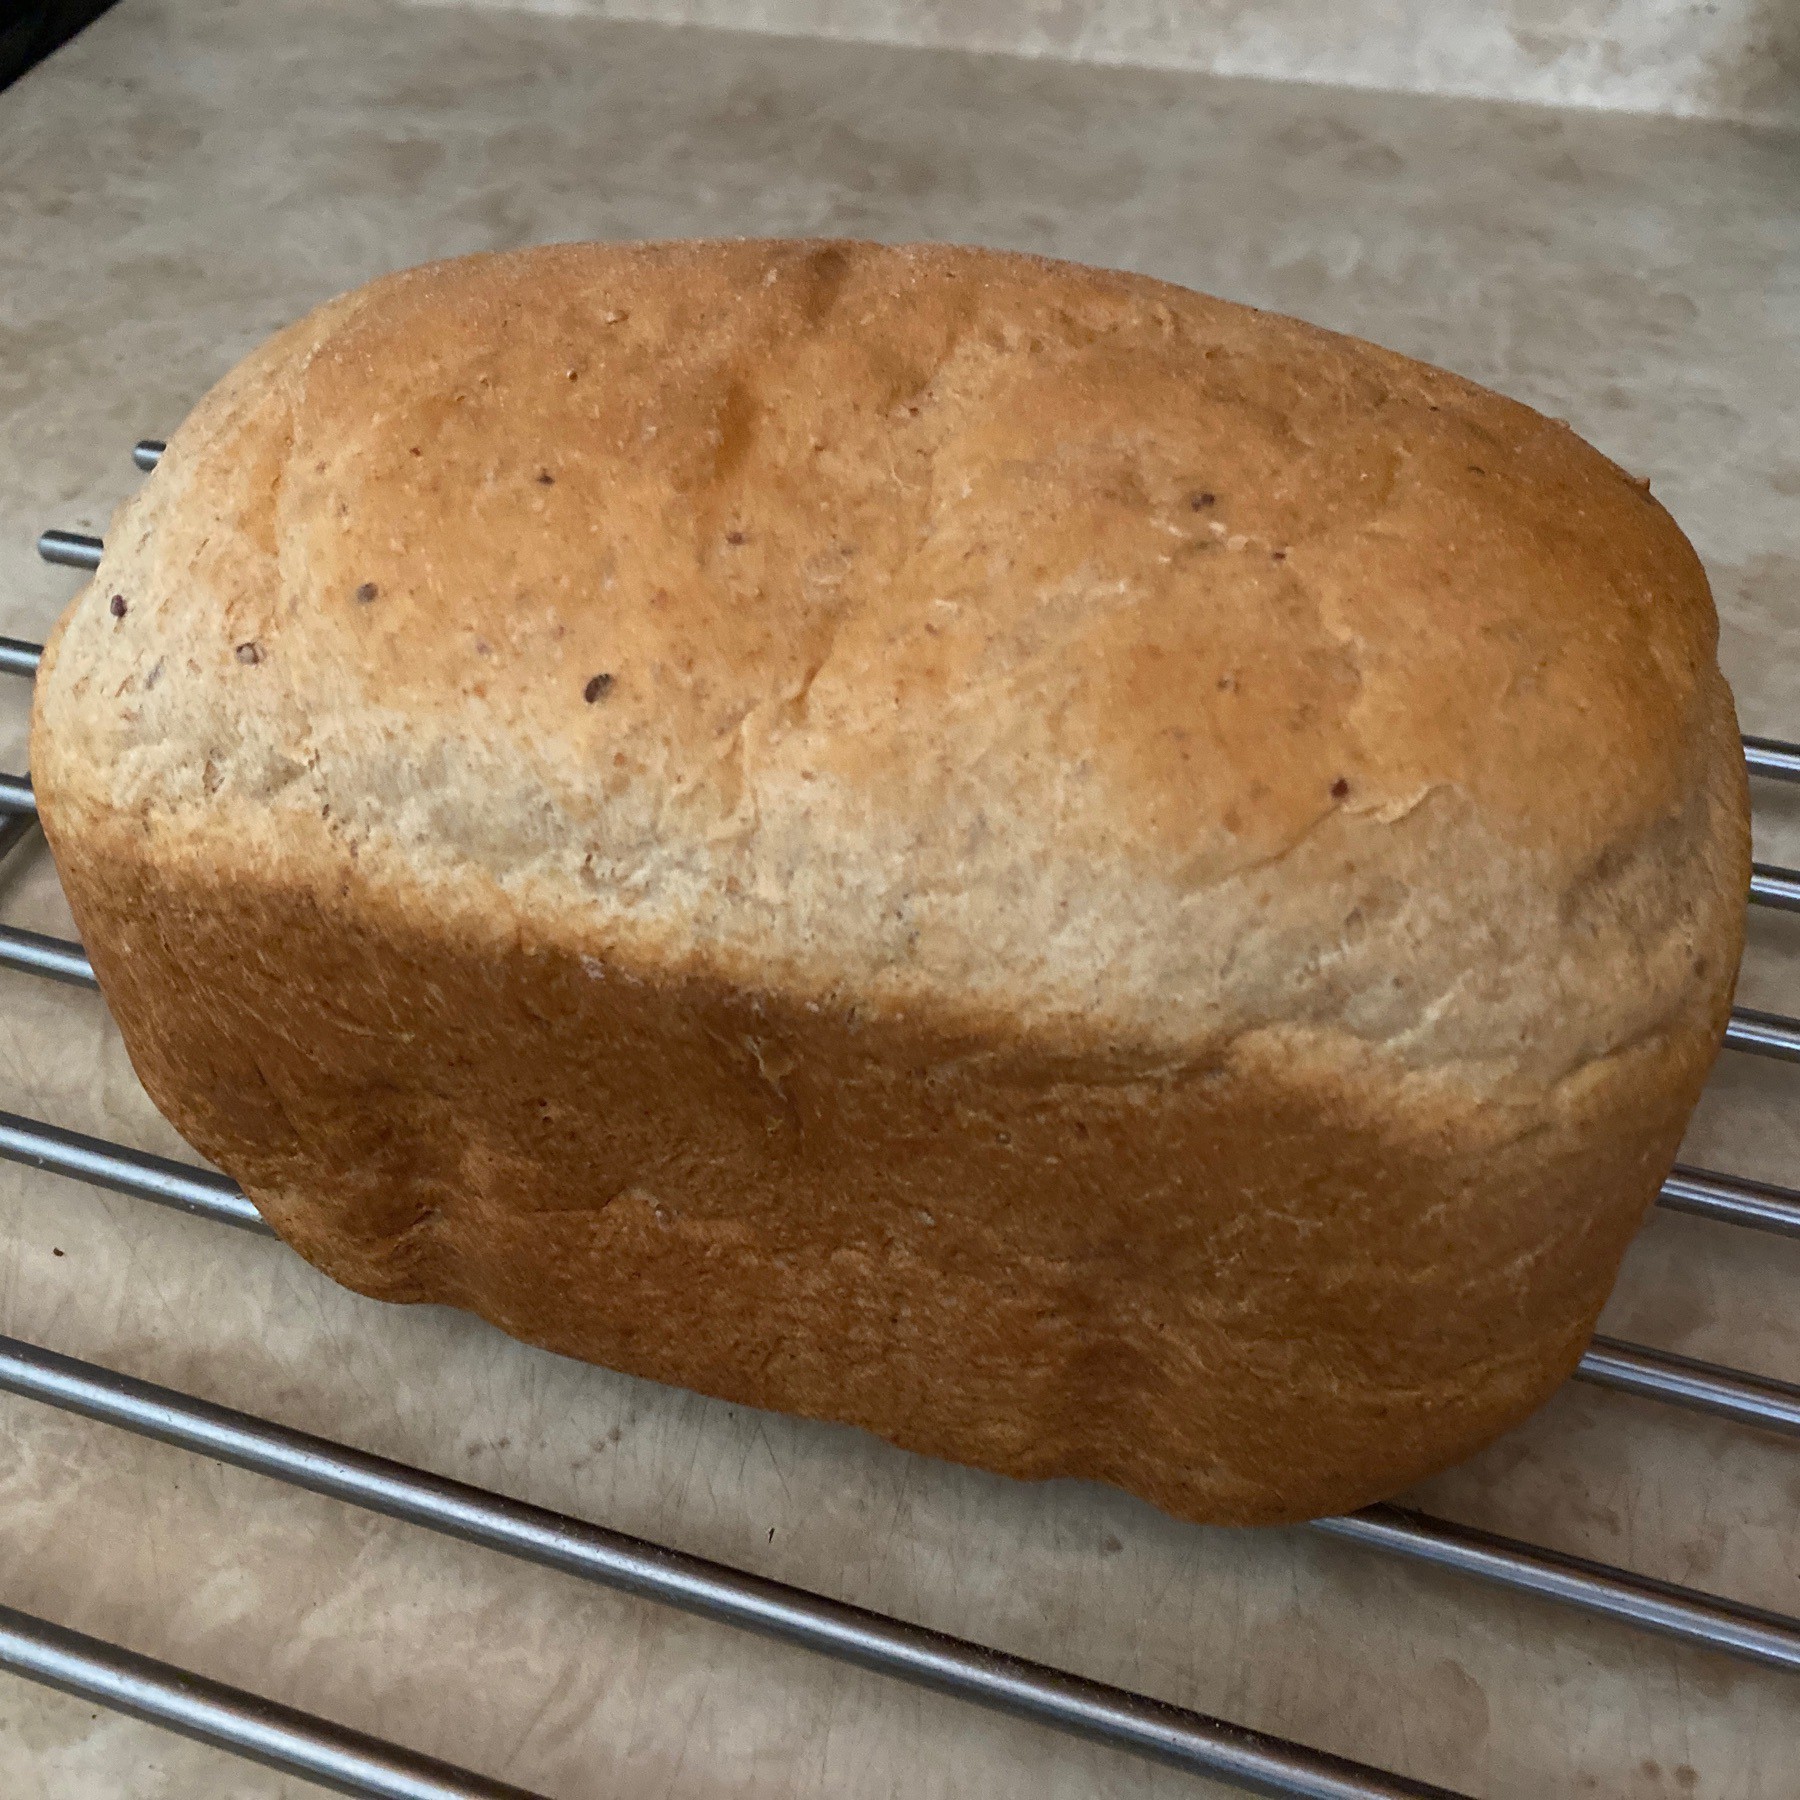 Loaf of bread cooling on rack.